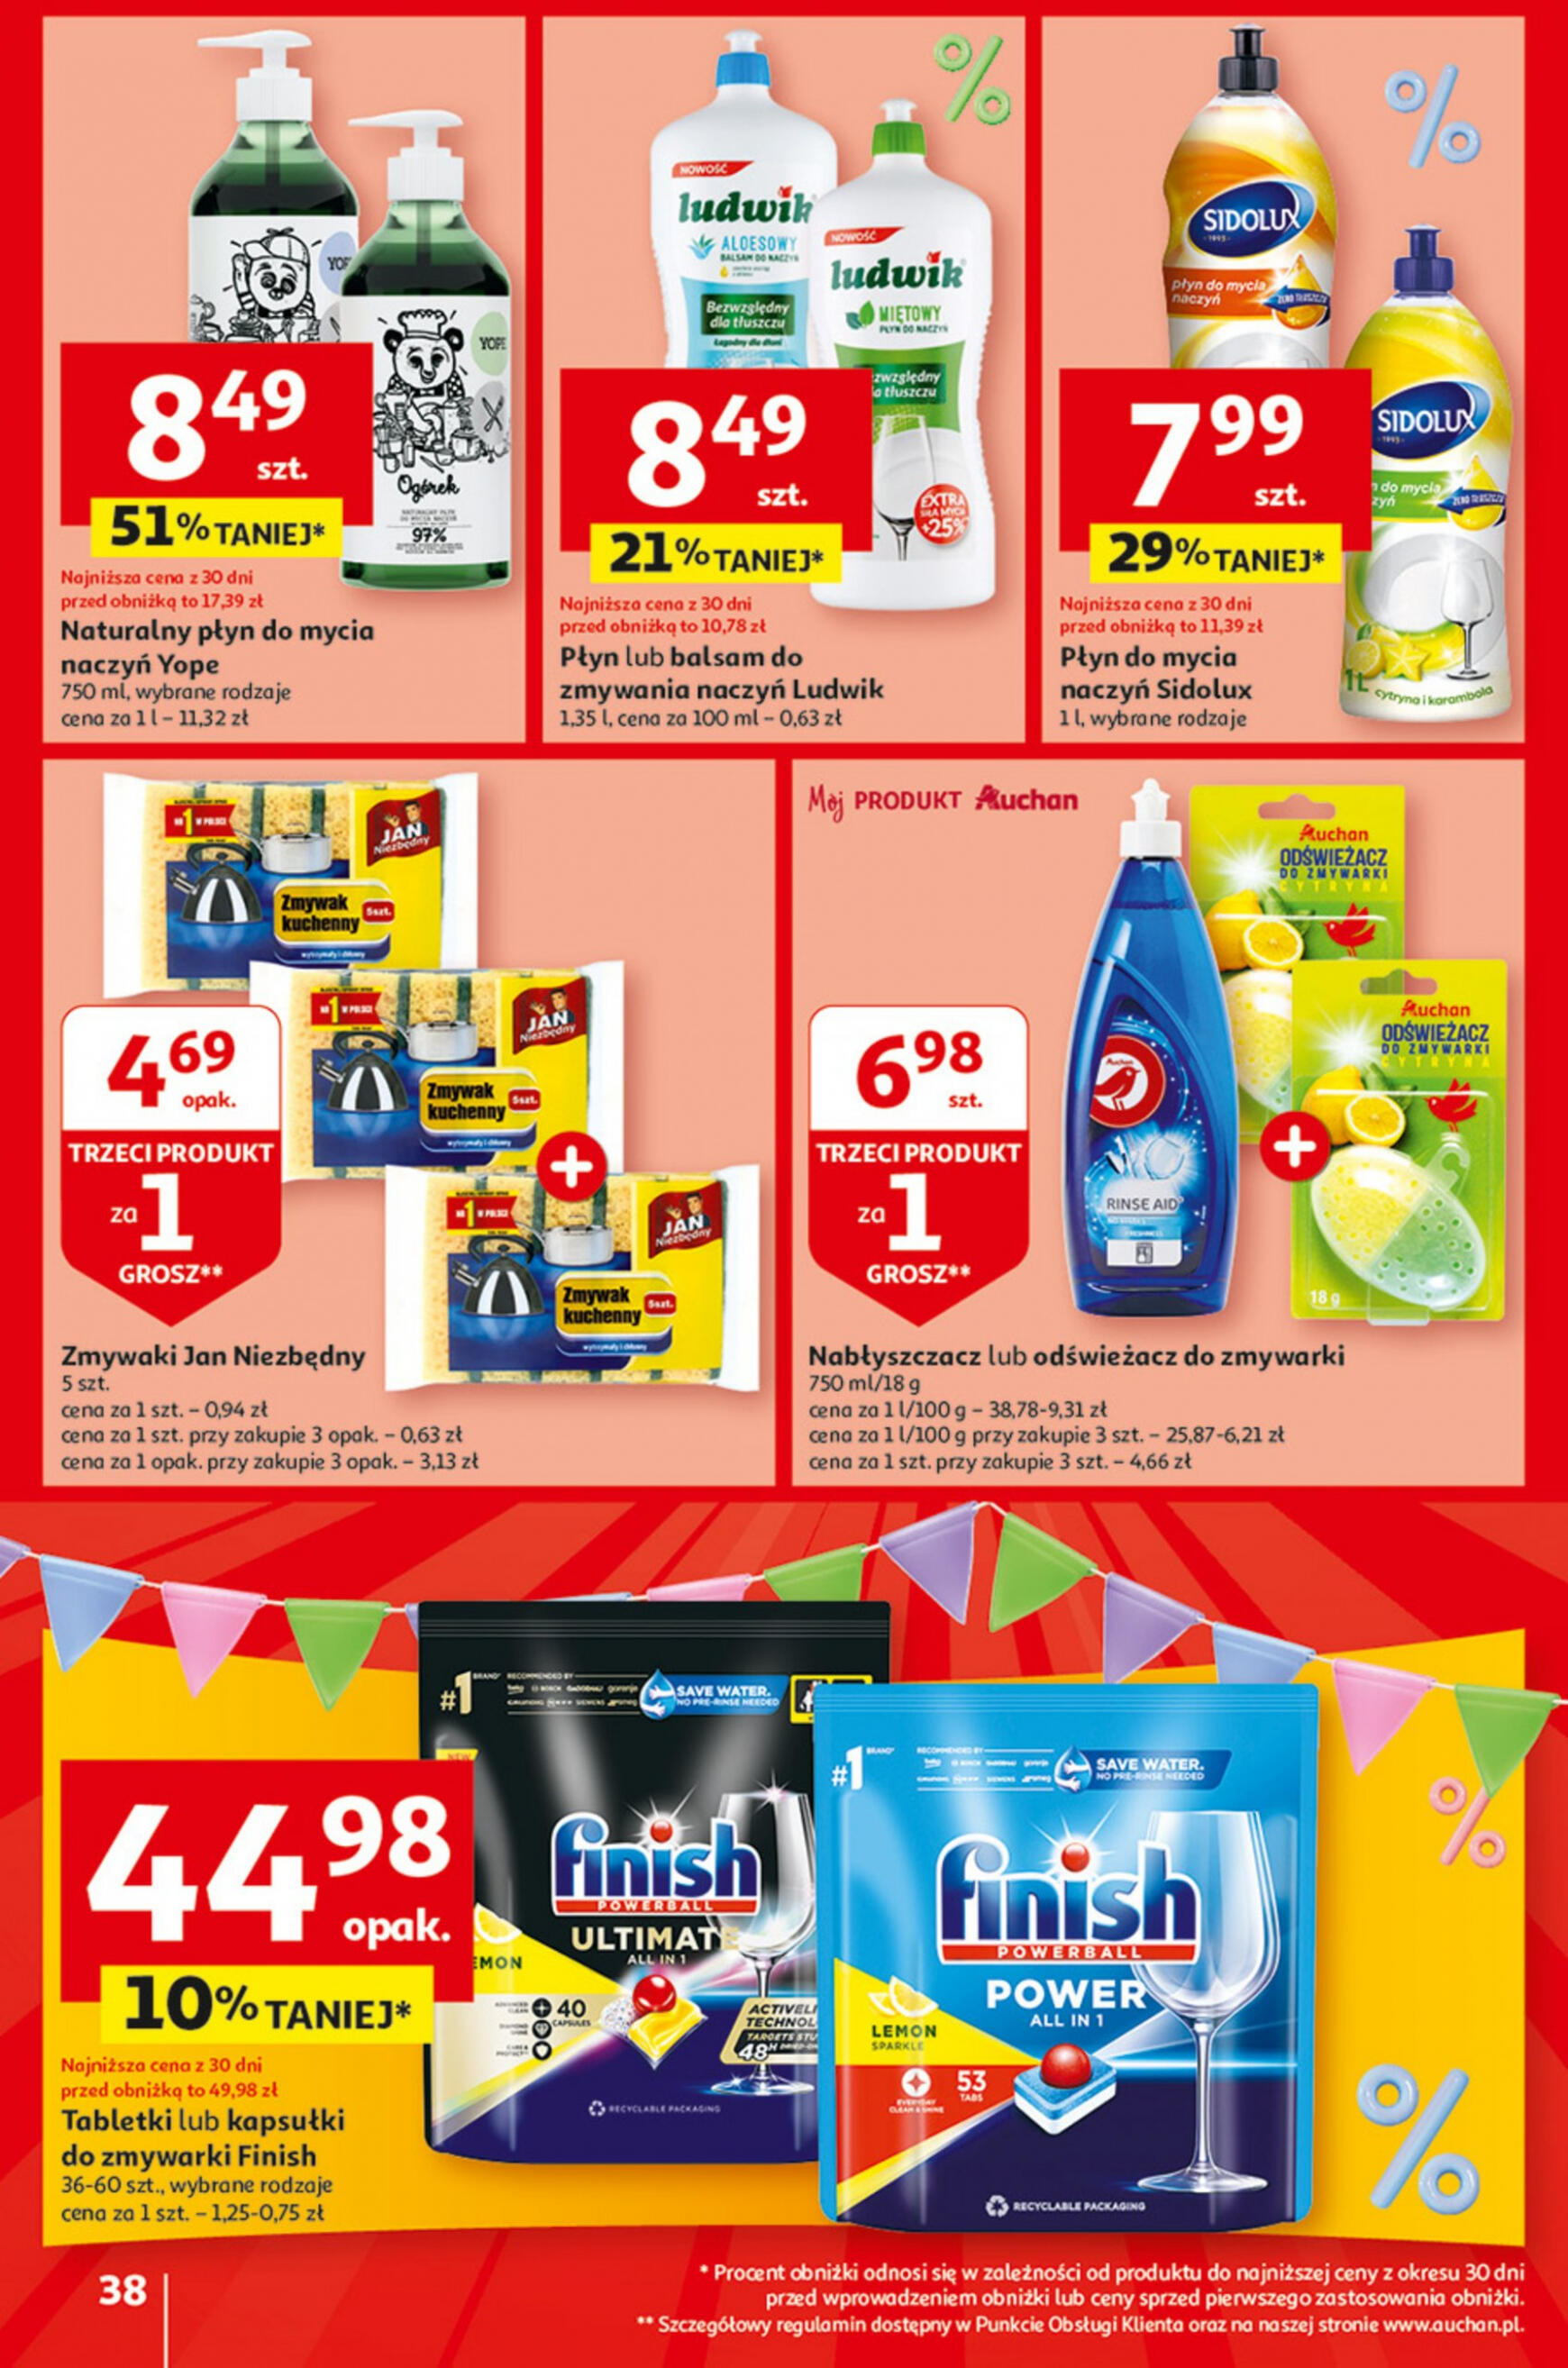 auchan - Hipermarket Auchan - Gazetka Jeszcze taniej na urodziny gazetka aktualna ważna od 09.05. - 15.05. - page: 38